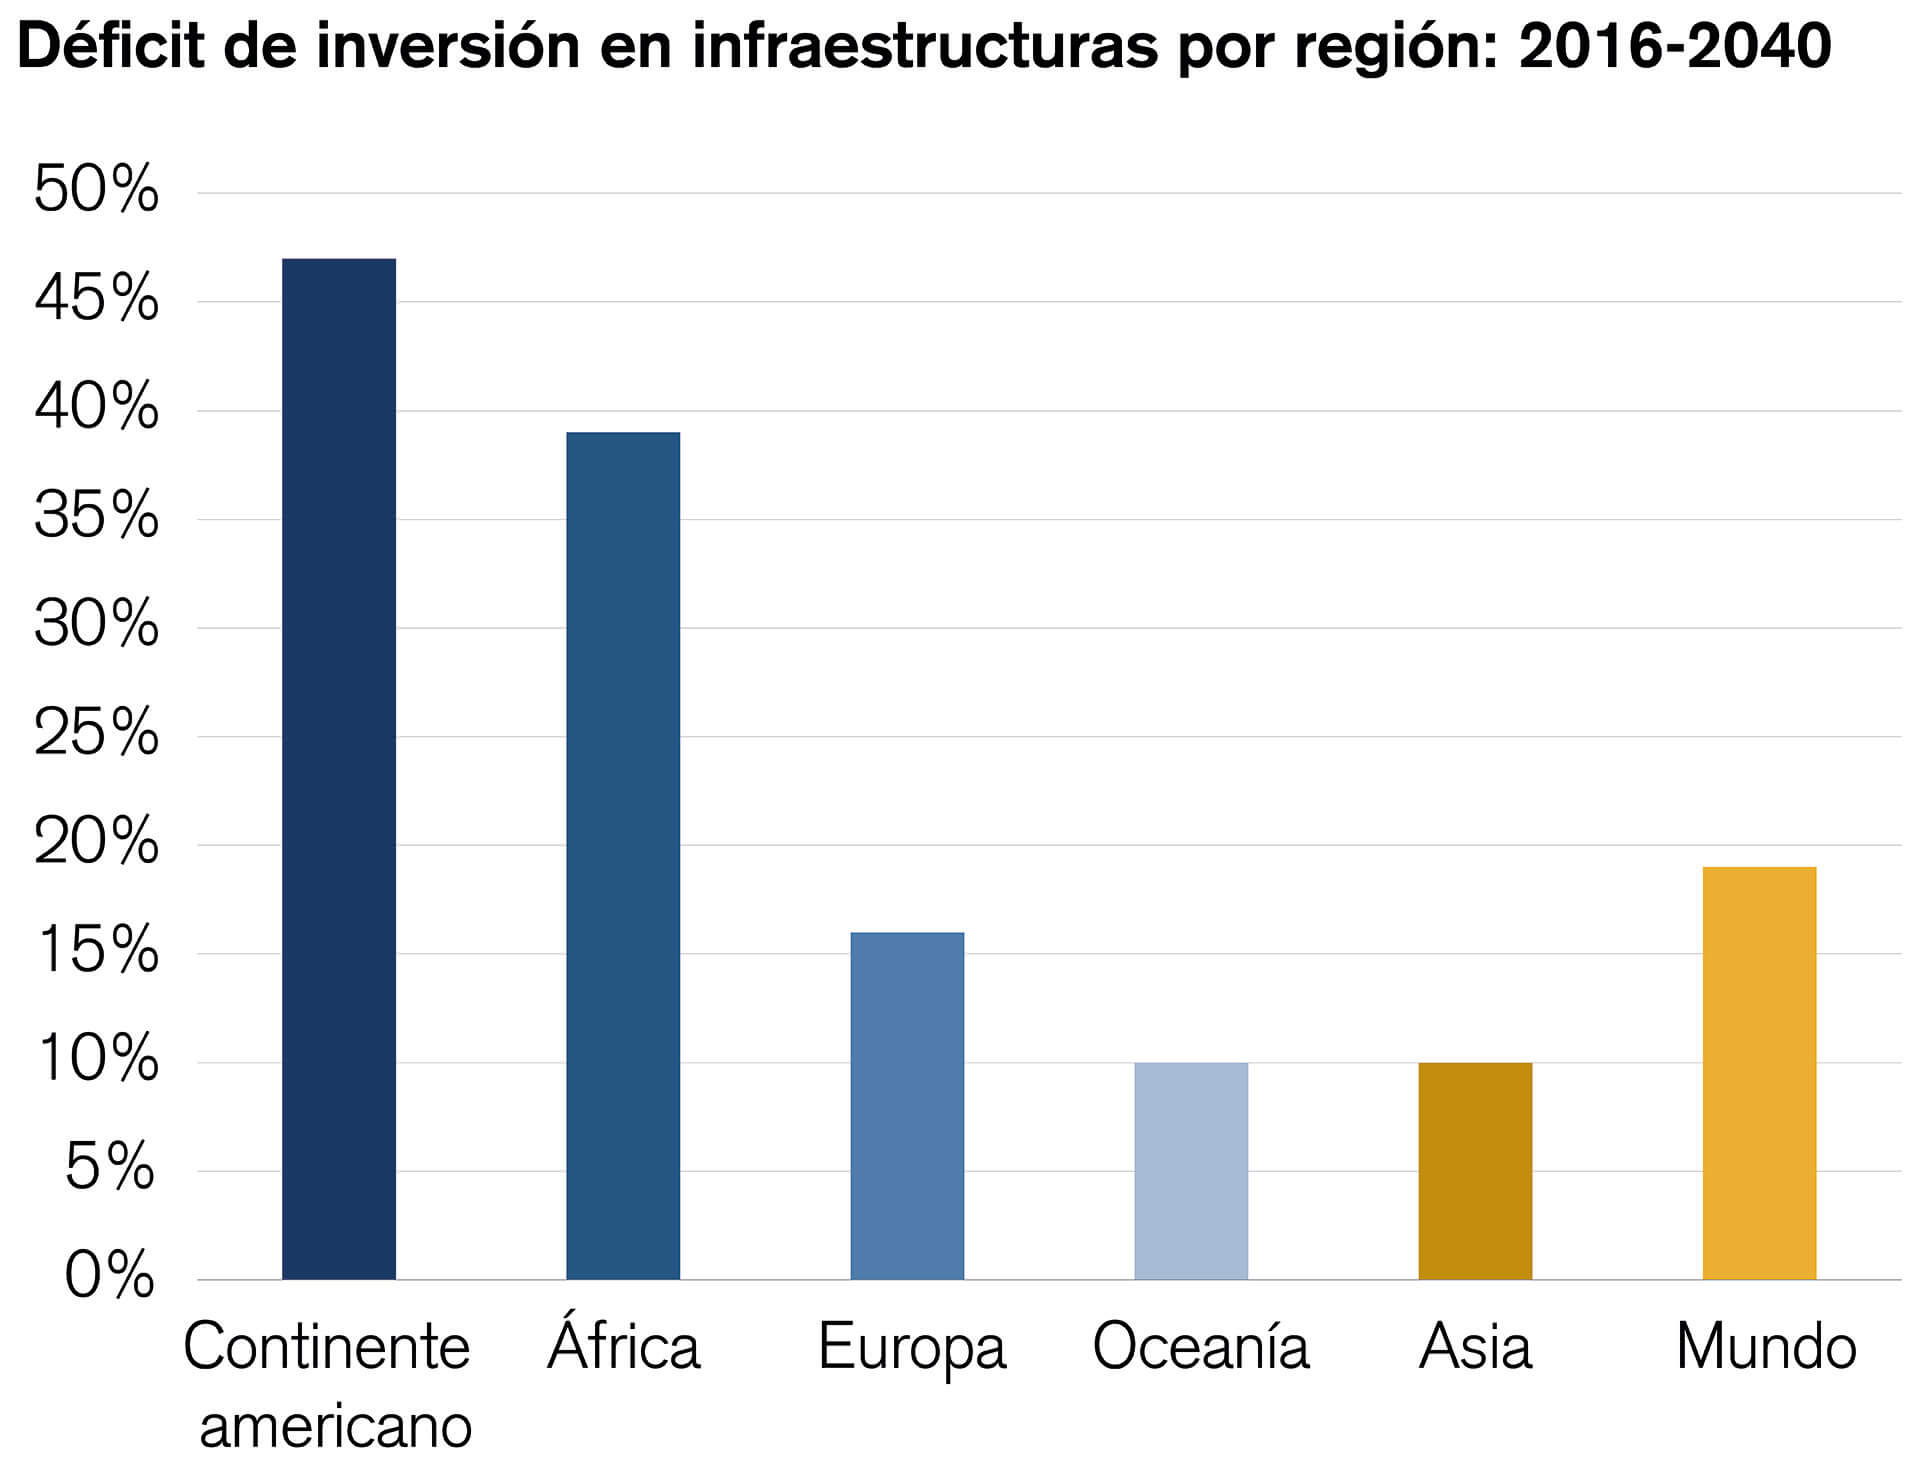 El gráfico de la barra vertical muestra la brecha de inversión en infraestructuras por regiones en los años 2016-2040.